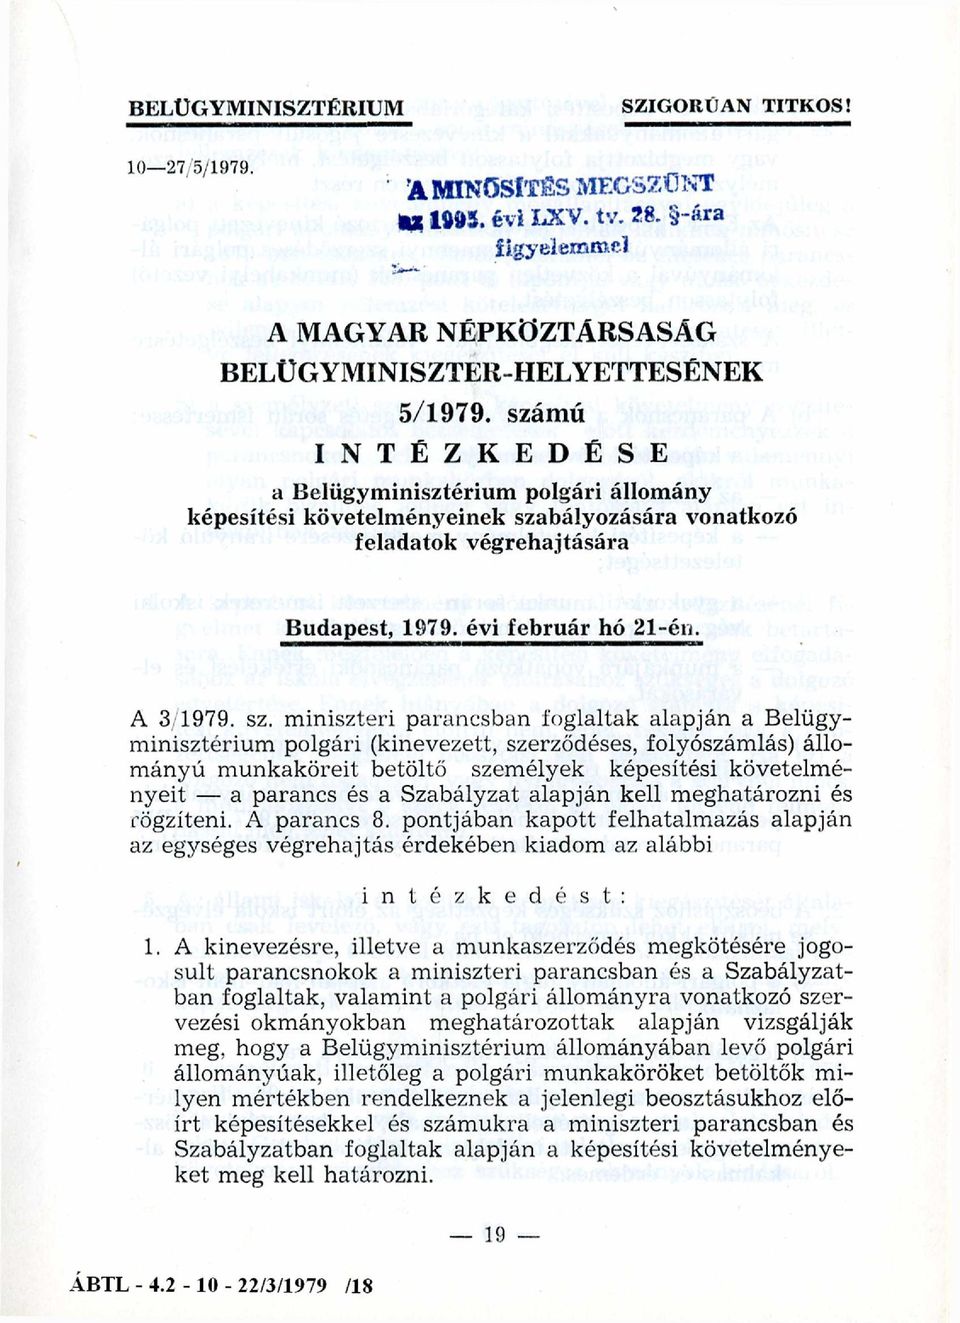 bályozására vonatkozó feladatok végrehajtására Budapest, 1979. évi február hó 21-én. A 3/1979. sz.